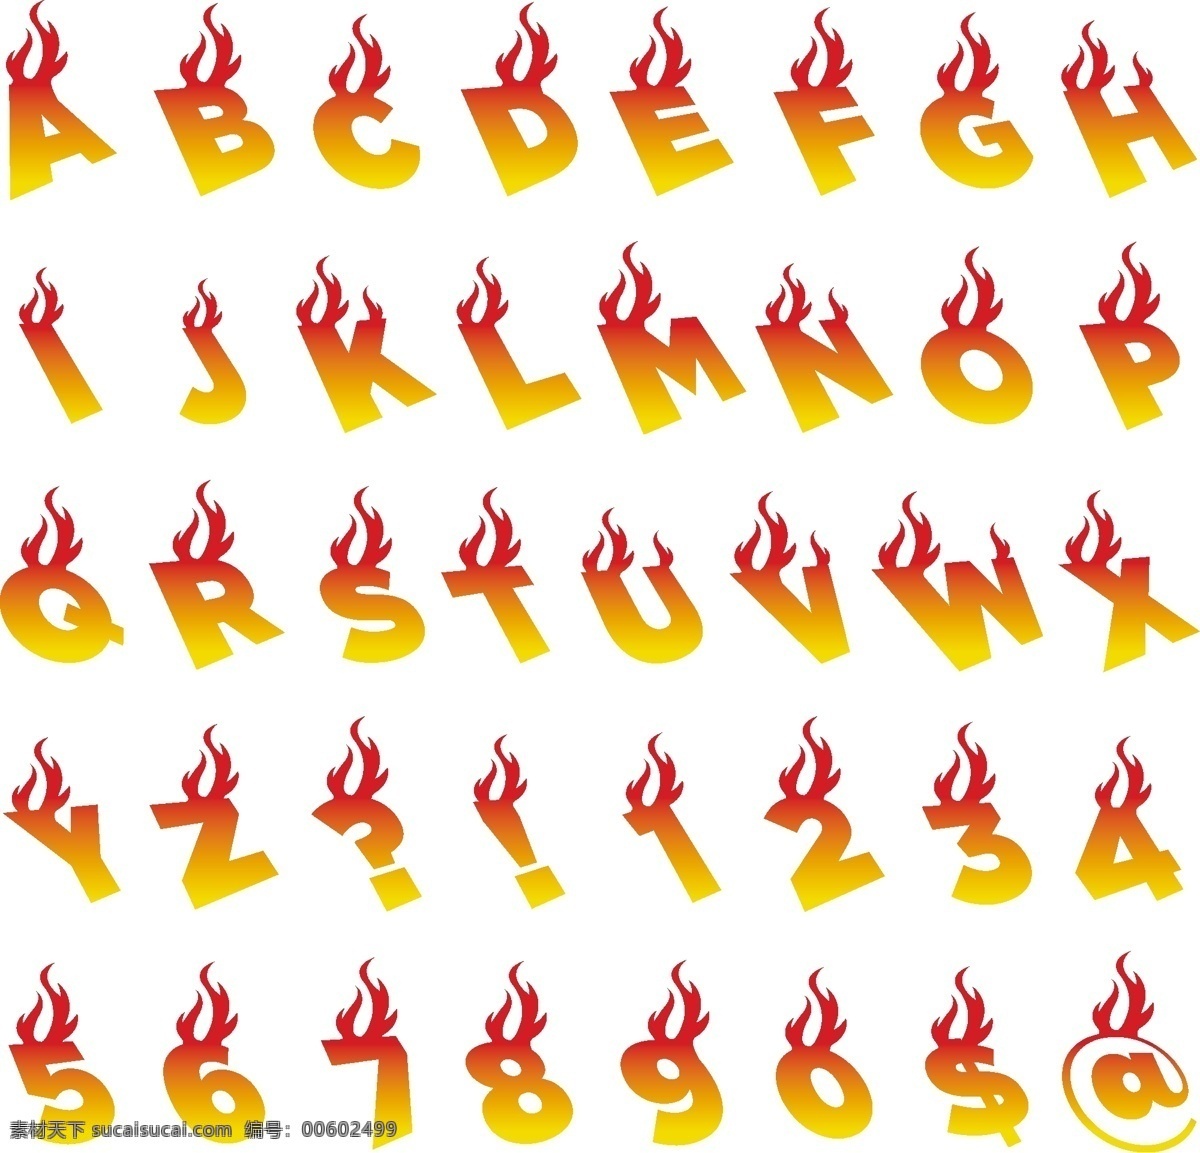 火焰字母 火焰 烈火 燃烧 字母设计 字母 英文字母 字母矢量素材 卡通字母 英文字体 拼音 可爱 符号 字母主题 矢量 图标 标志 标签